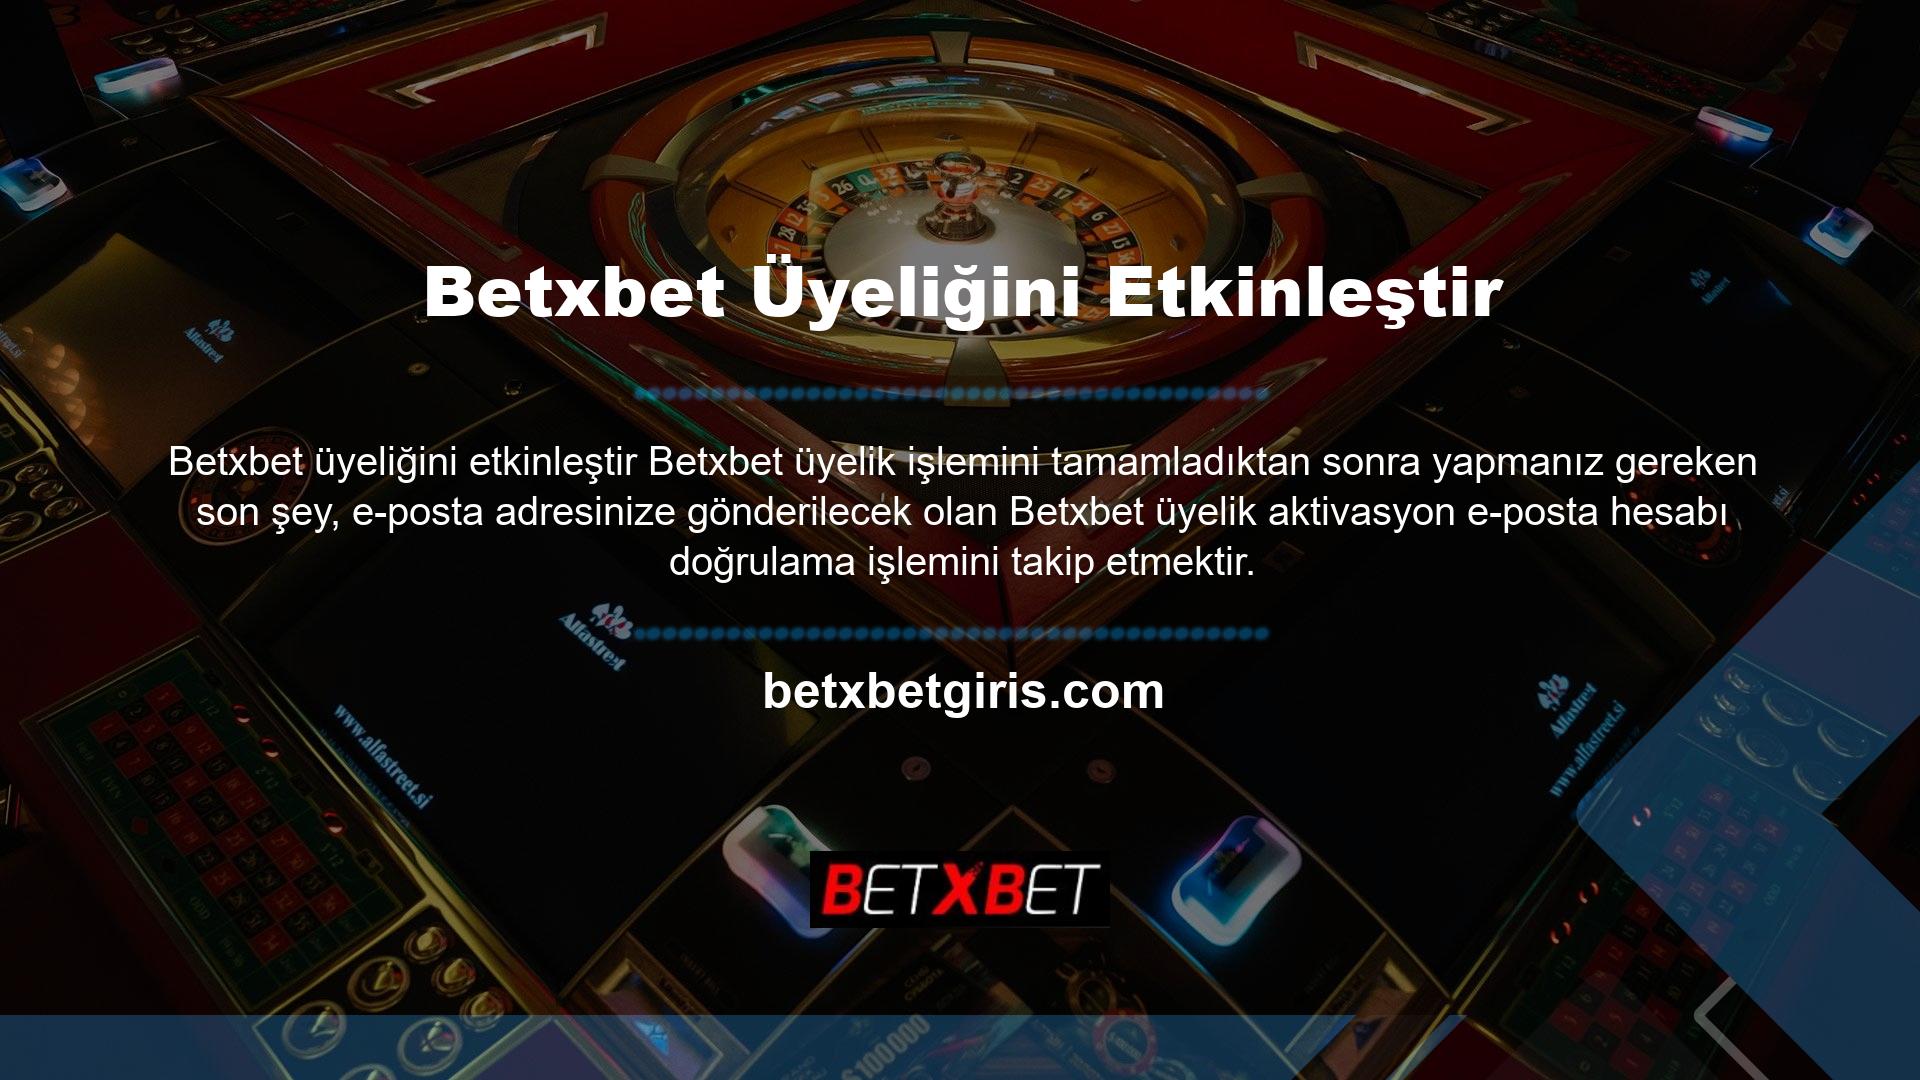 Bu programı sunarak, Betxbet web sitesindeki üye kimlik bilgilerinizi kullanarak hesabınıza erişebilirsiniz